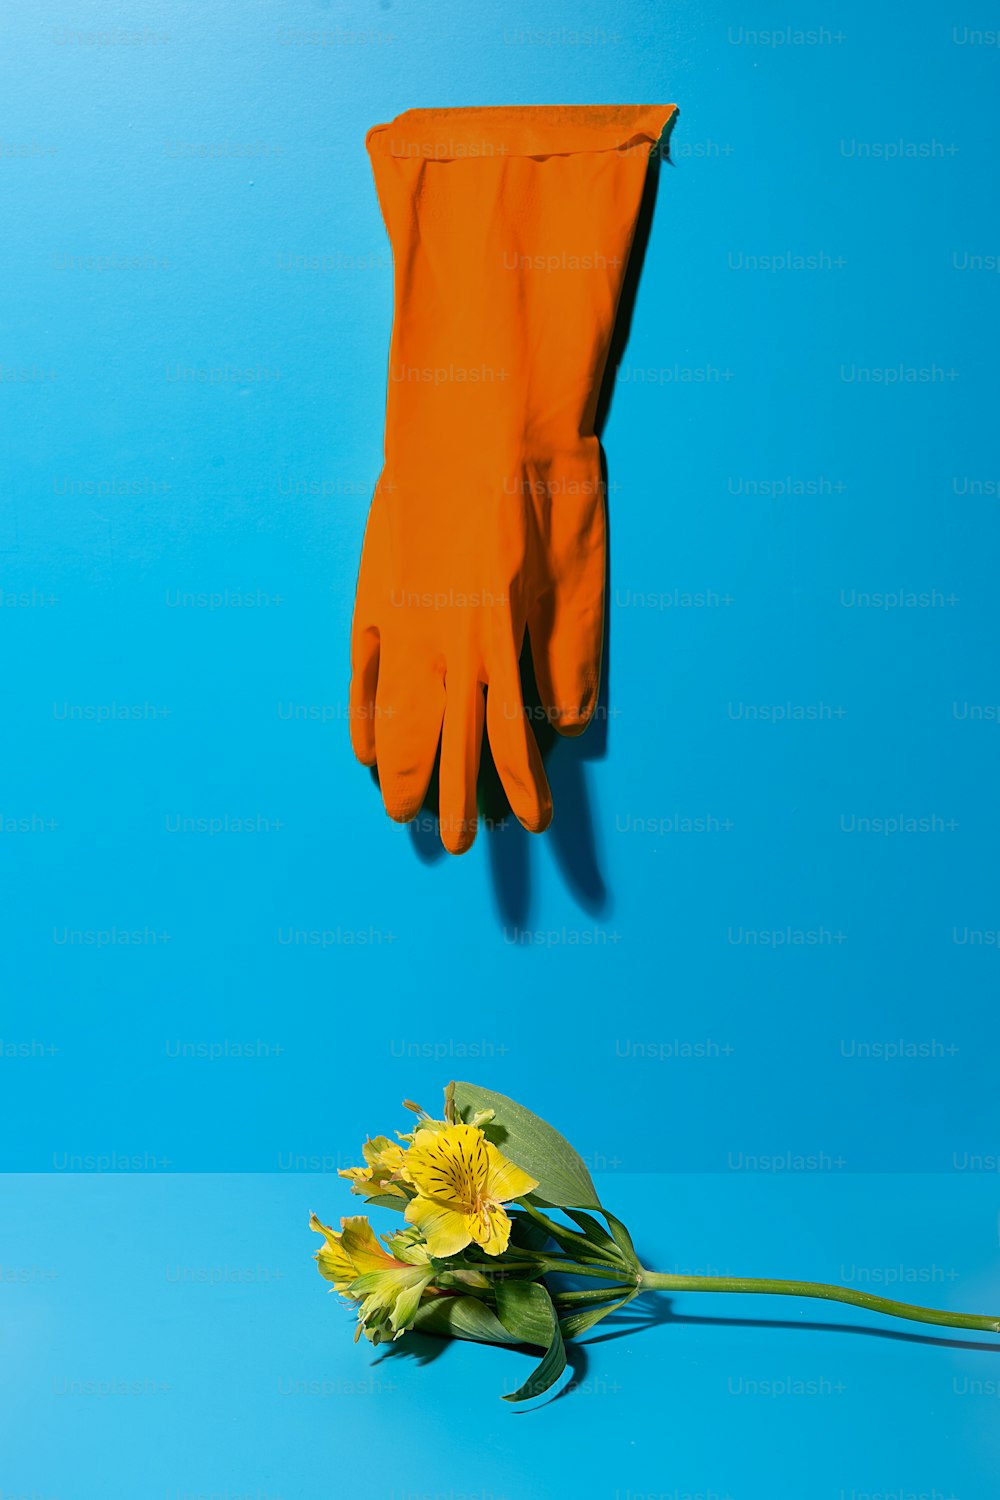 파란색 바탕에 장갑 한 켤레와 노란색 꽃